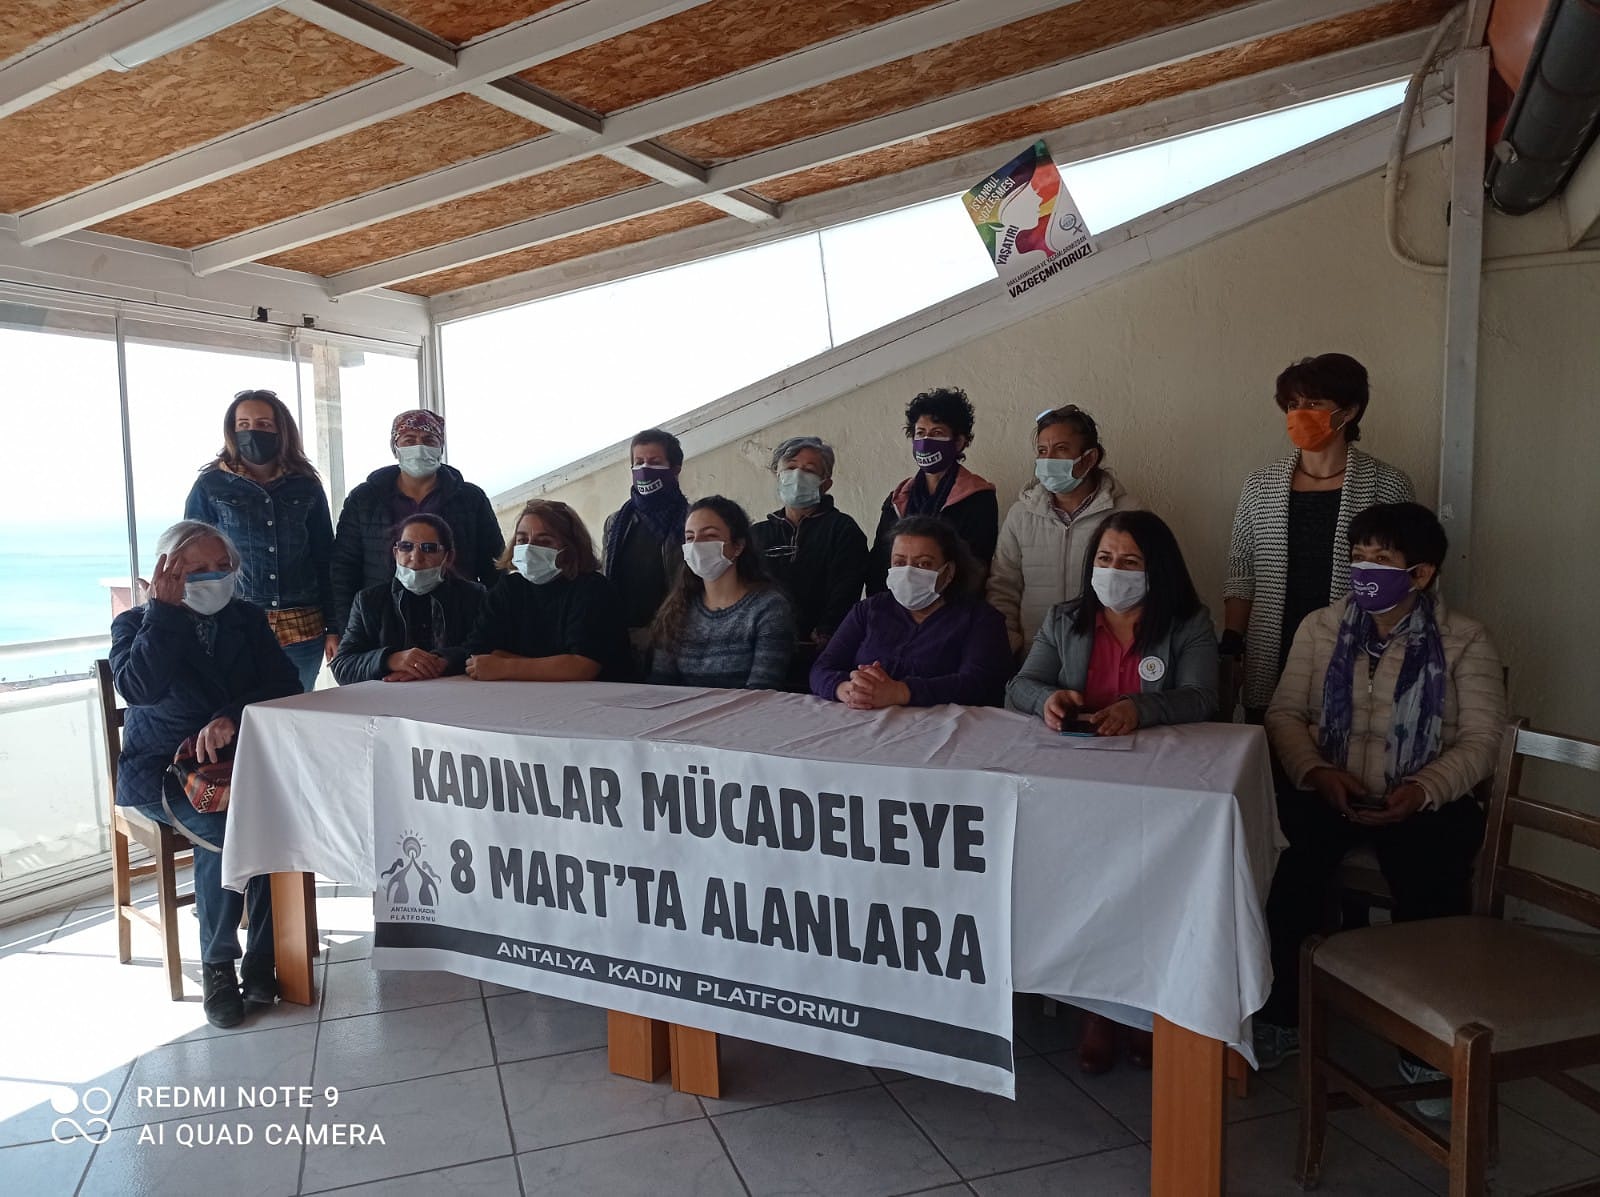 Antalya Kadın Platformu 8 Mart Eylem-Etkinlik Takvimini Açıkladı